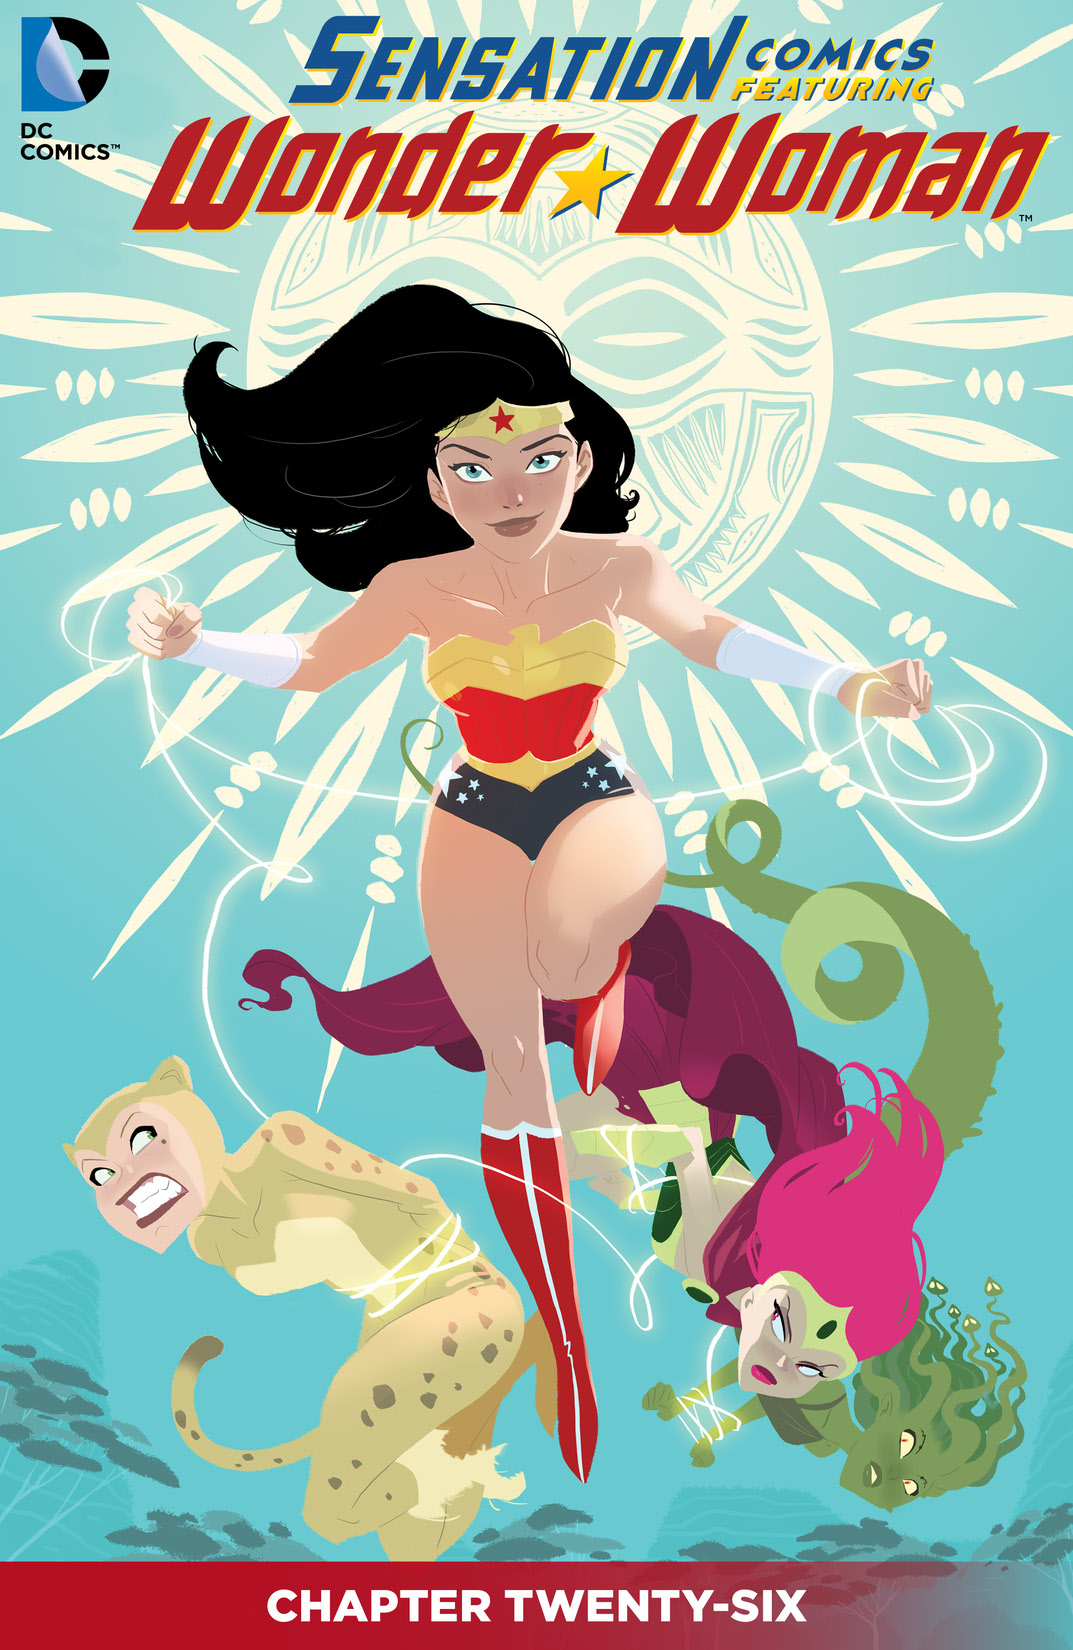 Sensation Comics Featuring Wonder Woman #26 preview images